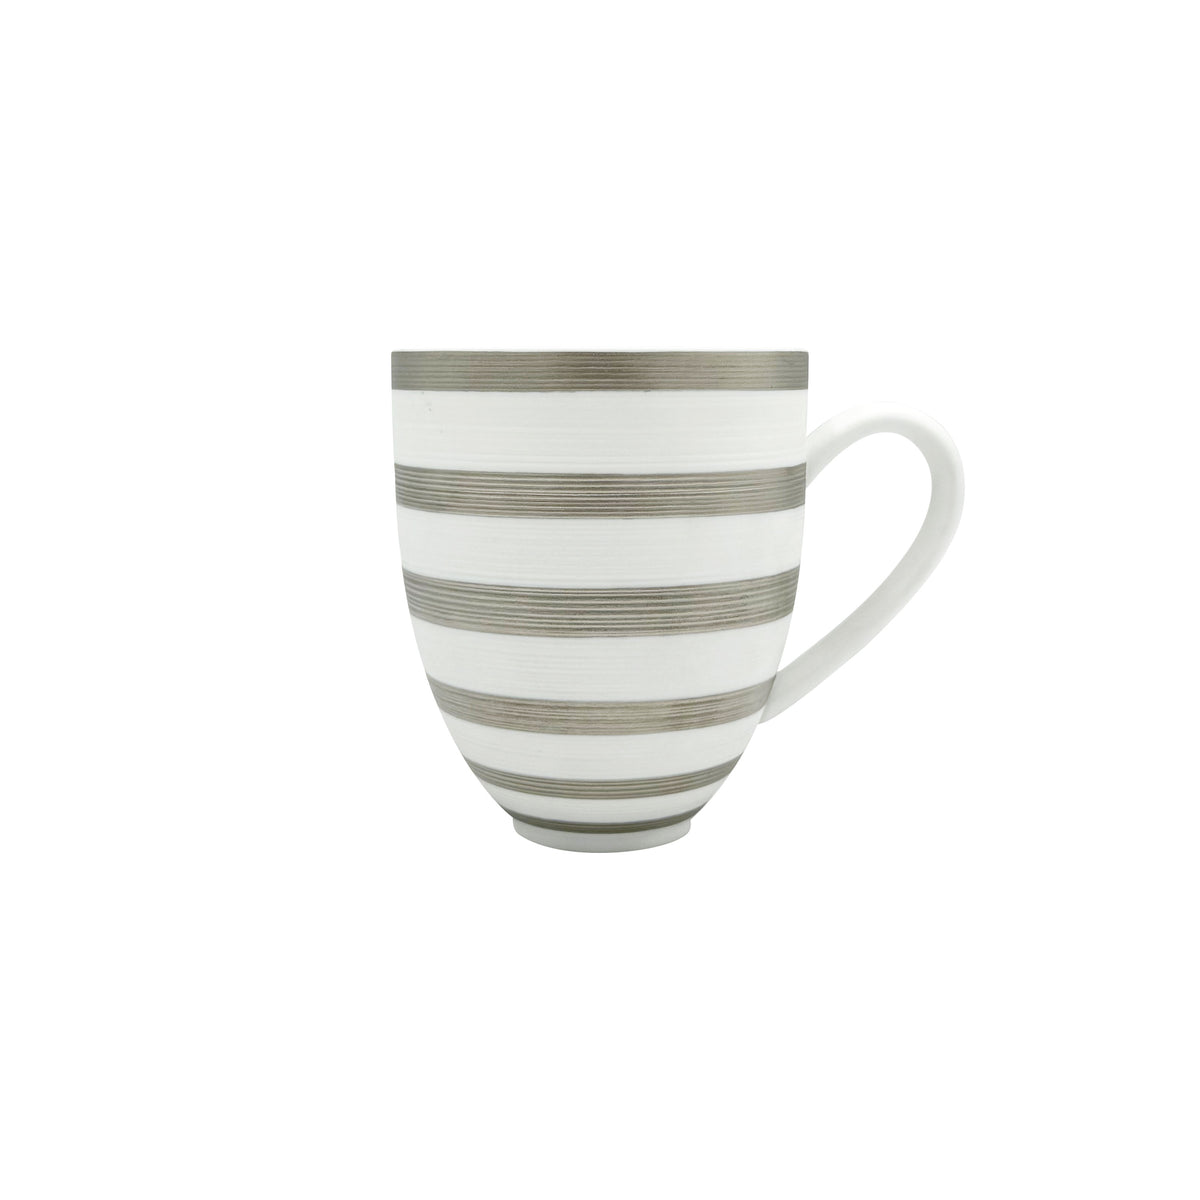 HEMISPHERE Platinum stripes- Mug